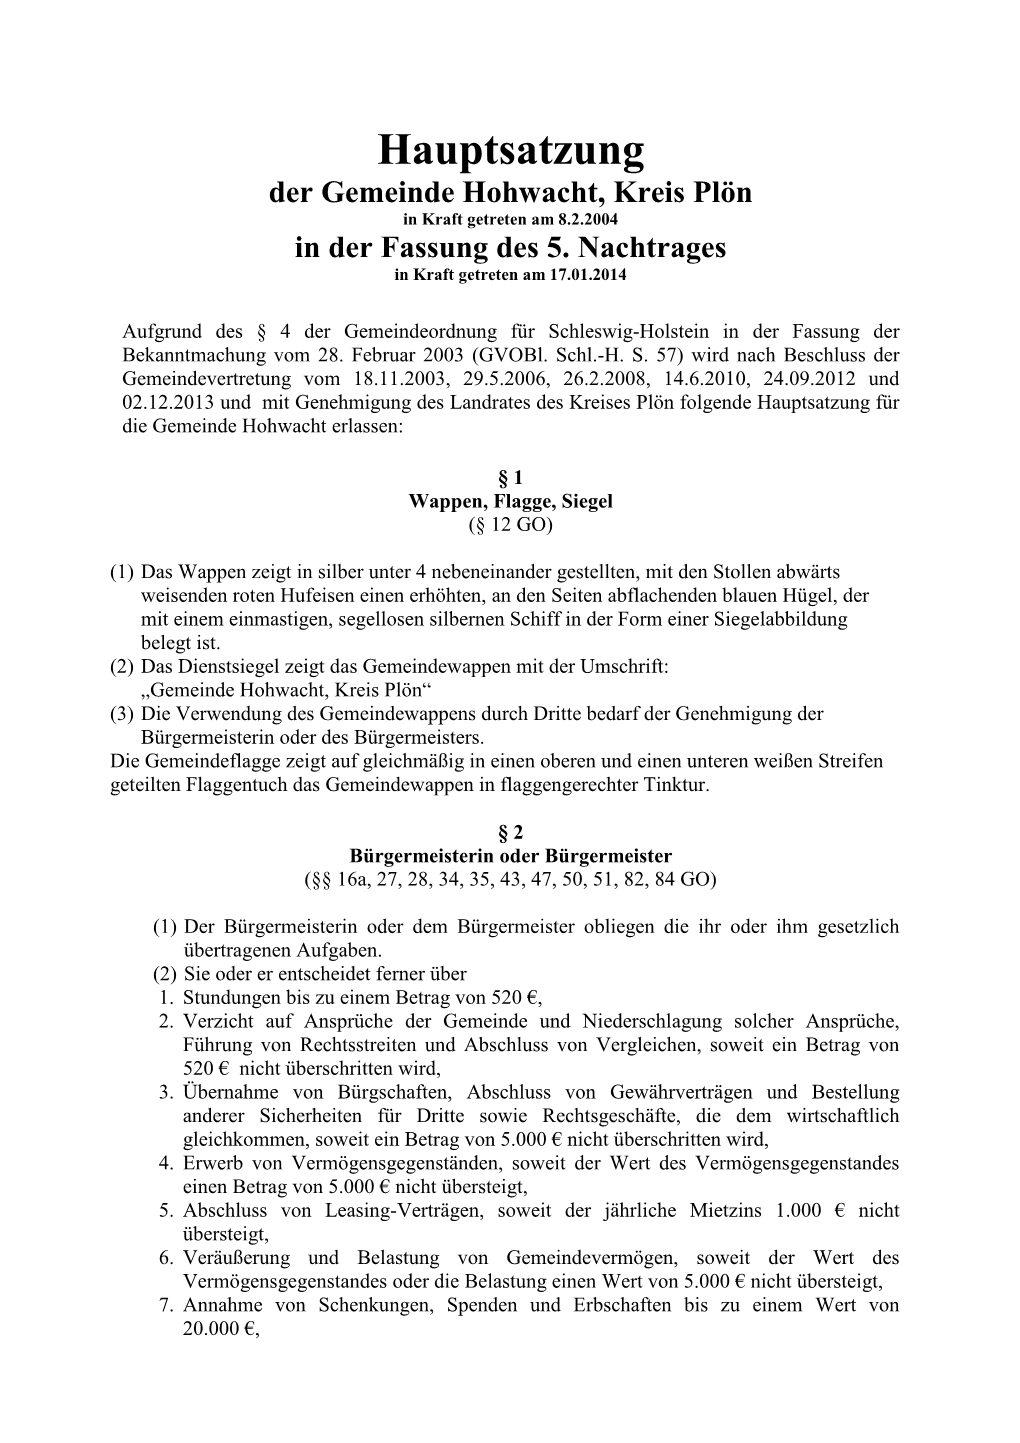 Hauptsatzung Der Gemeinde Hohwacht, Kreis Plön in Kraft Getreten Am 8.2.2004 in Der Fassung Des 5